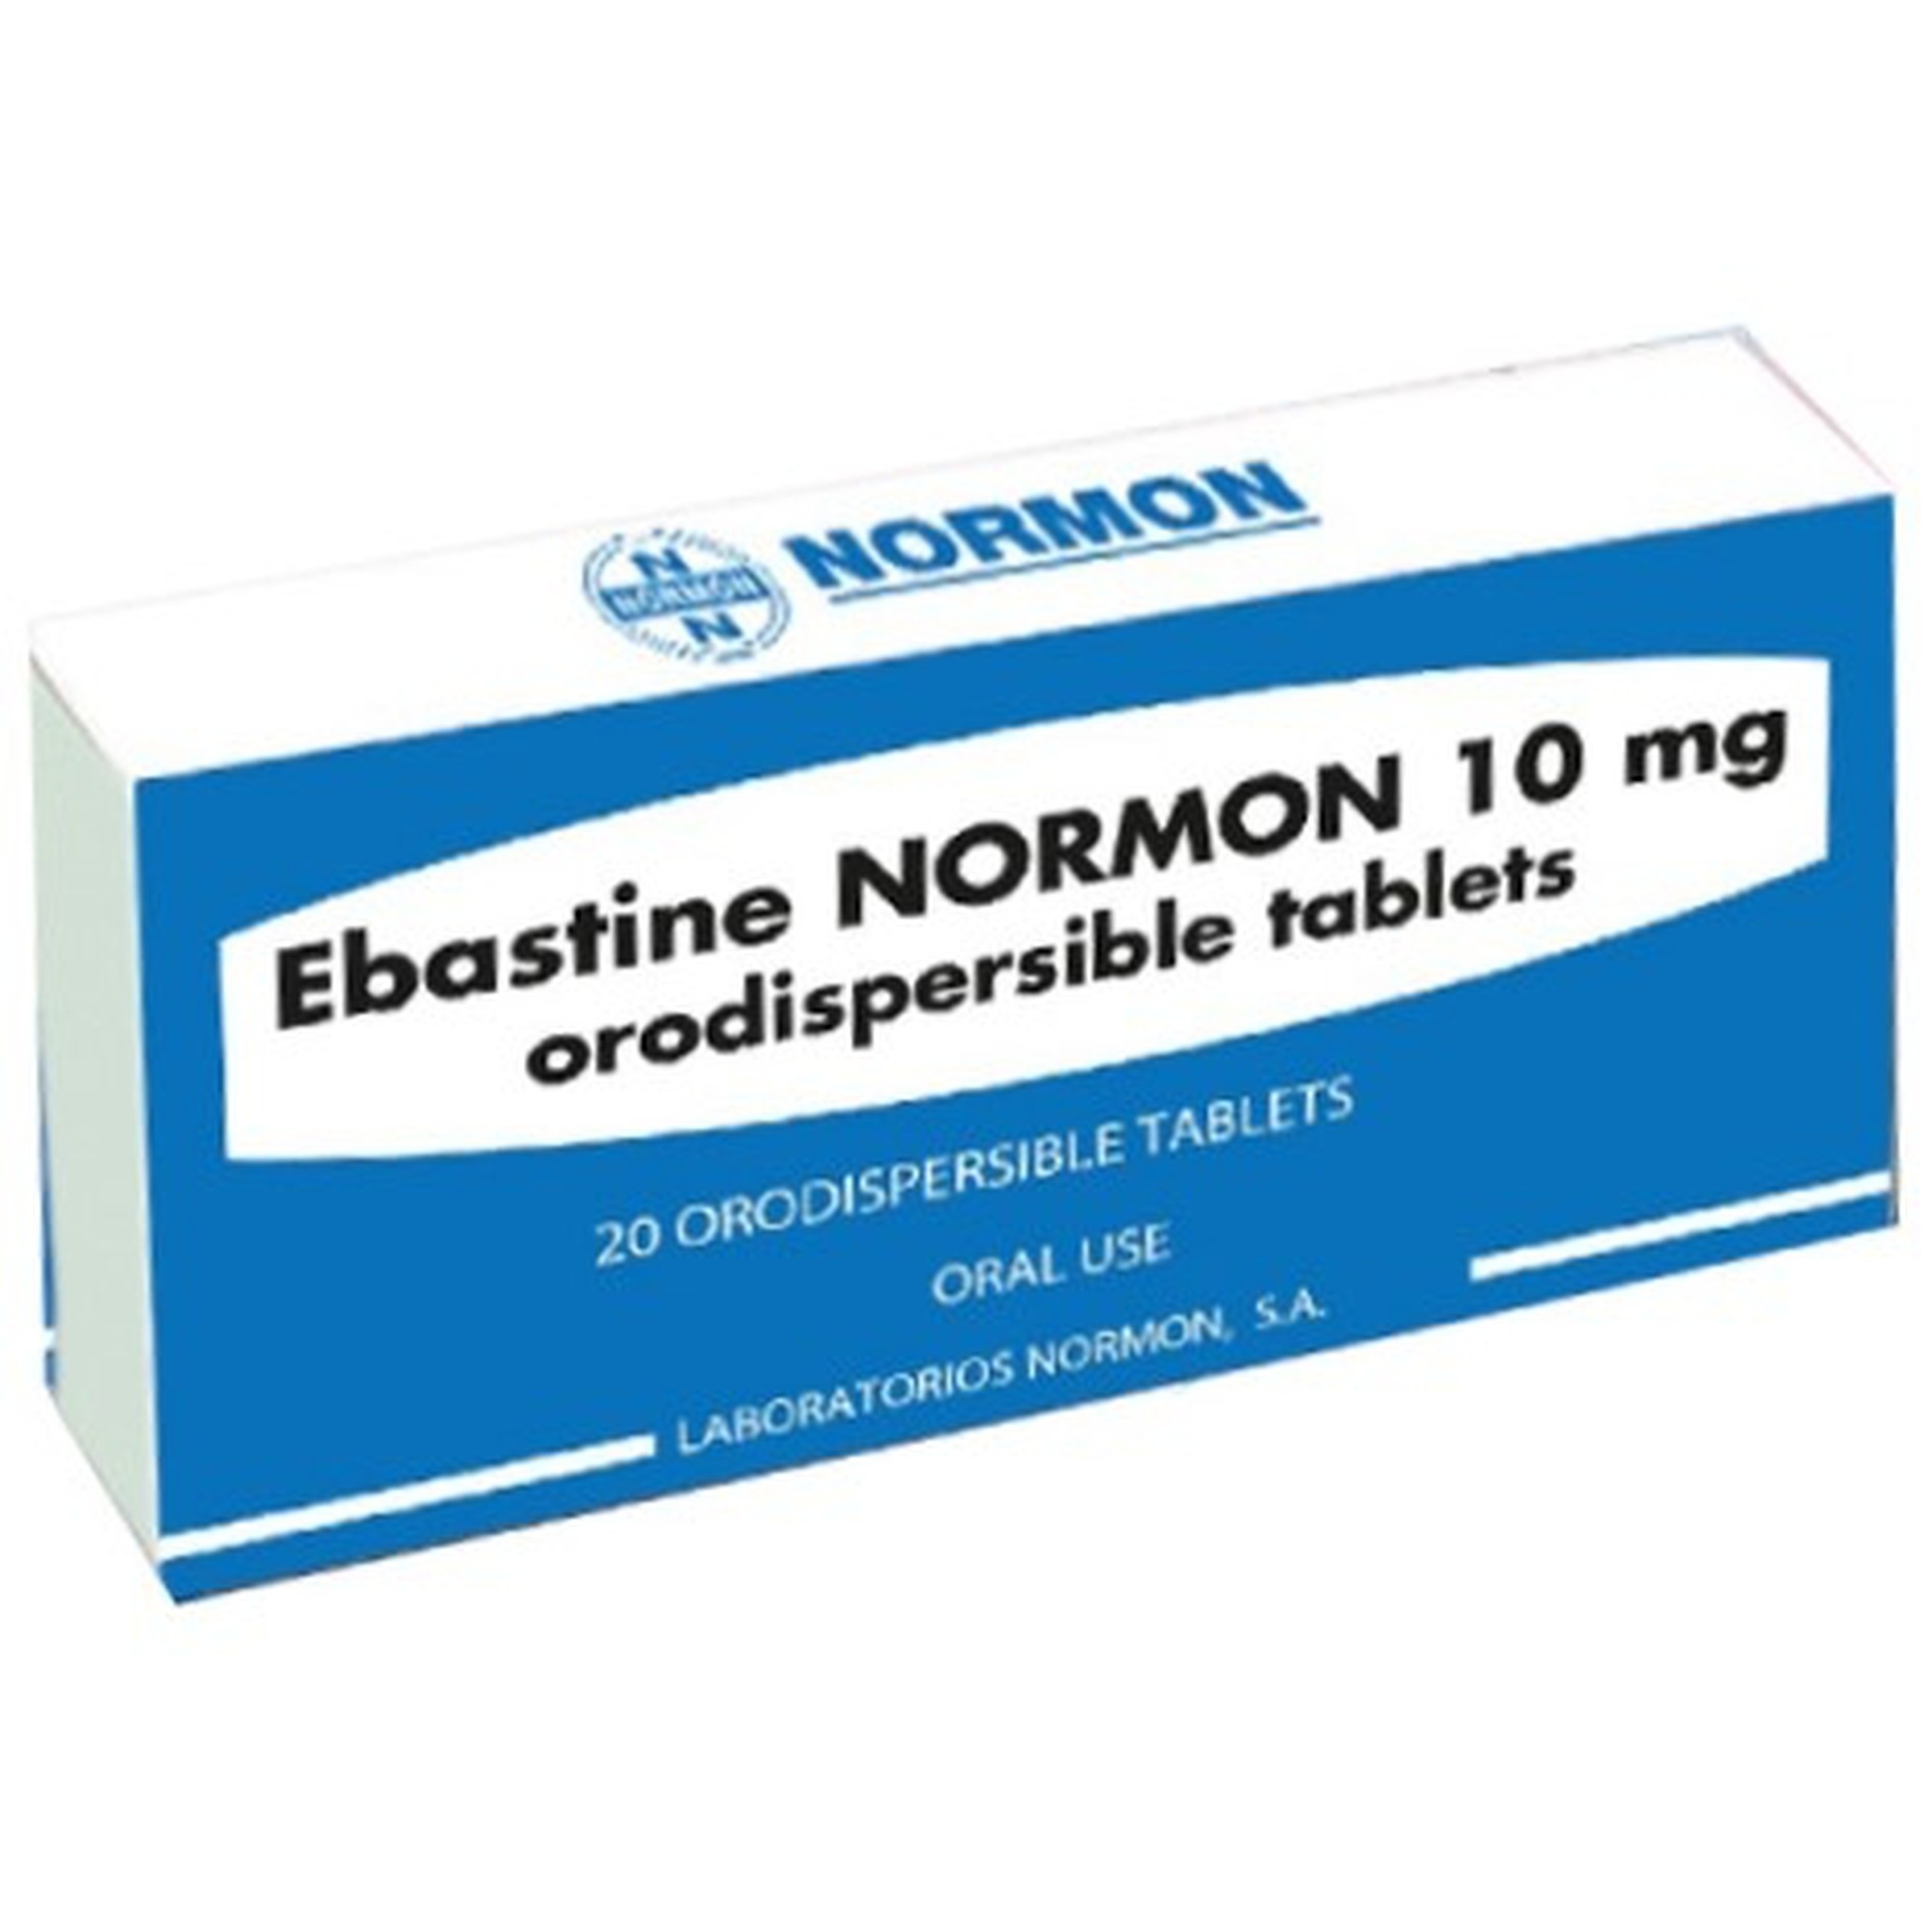 Thuốc Ebastine Normon 10mg điều trị viêm mũi dị ứng, mề đay vô căn (2 vỉ x 10 viên)